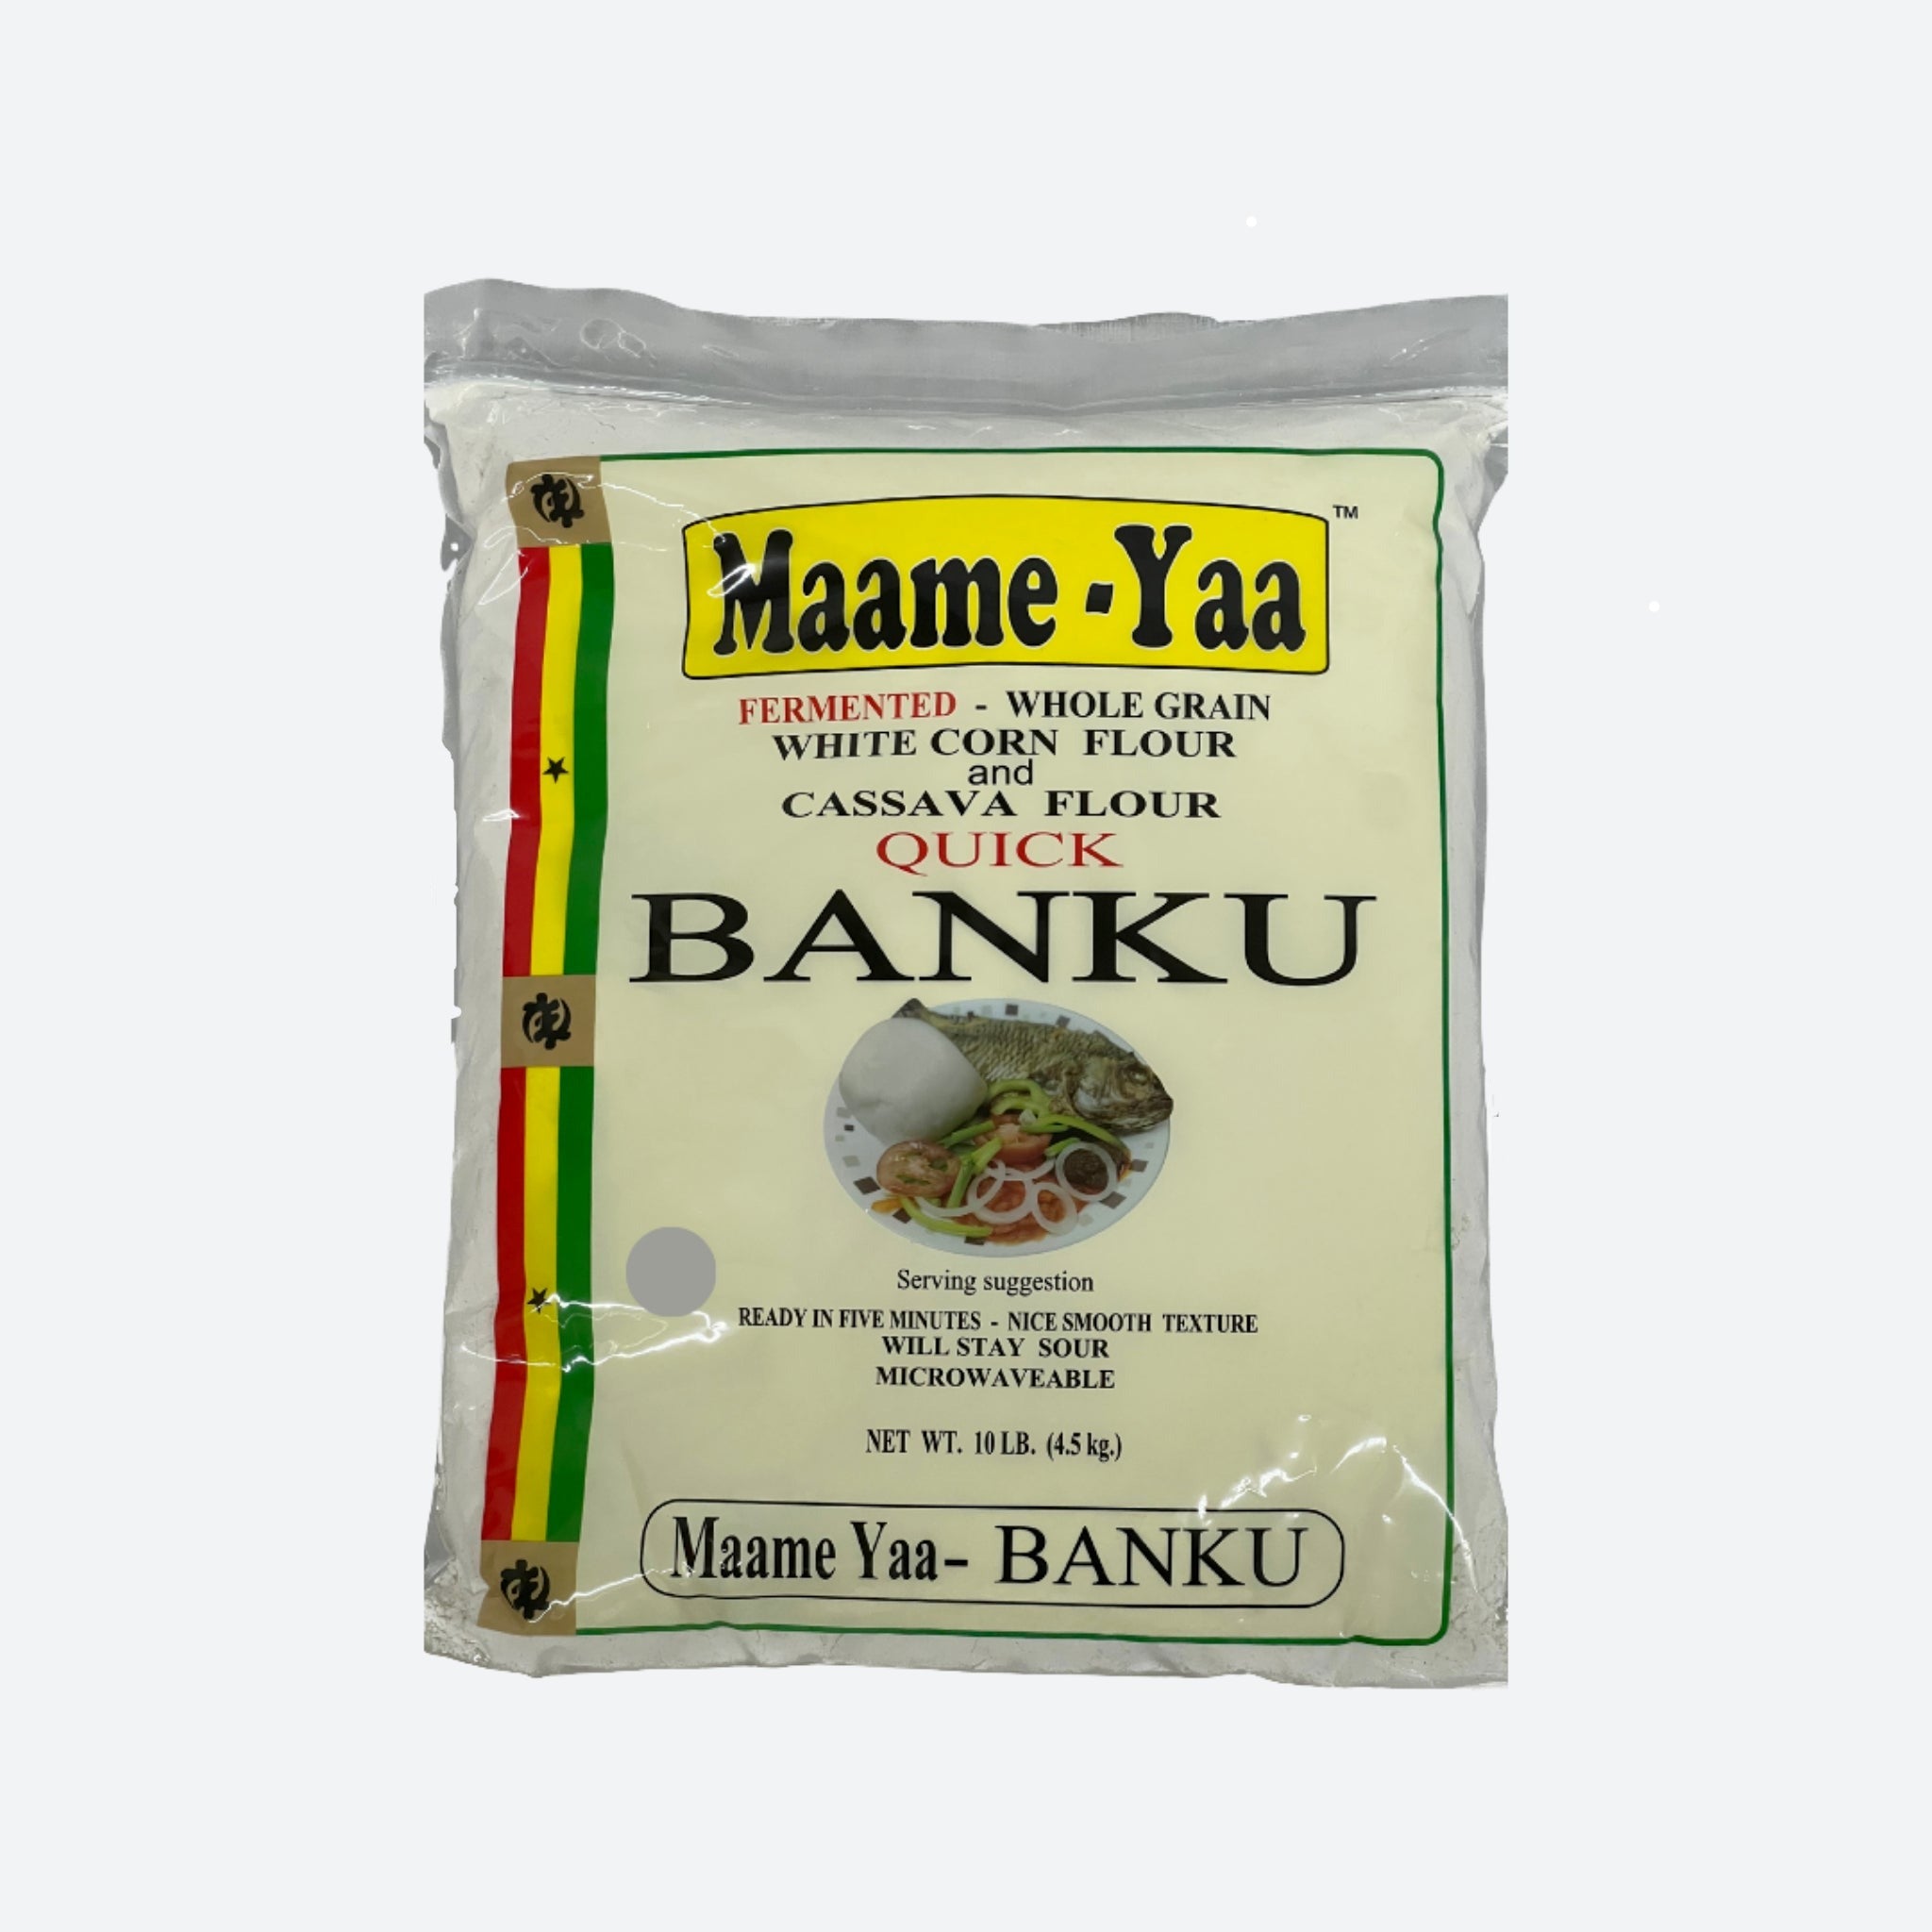 Maame-Yaa Quick Banku - 10lbs (4.5kg)